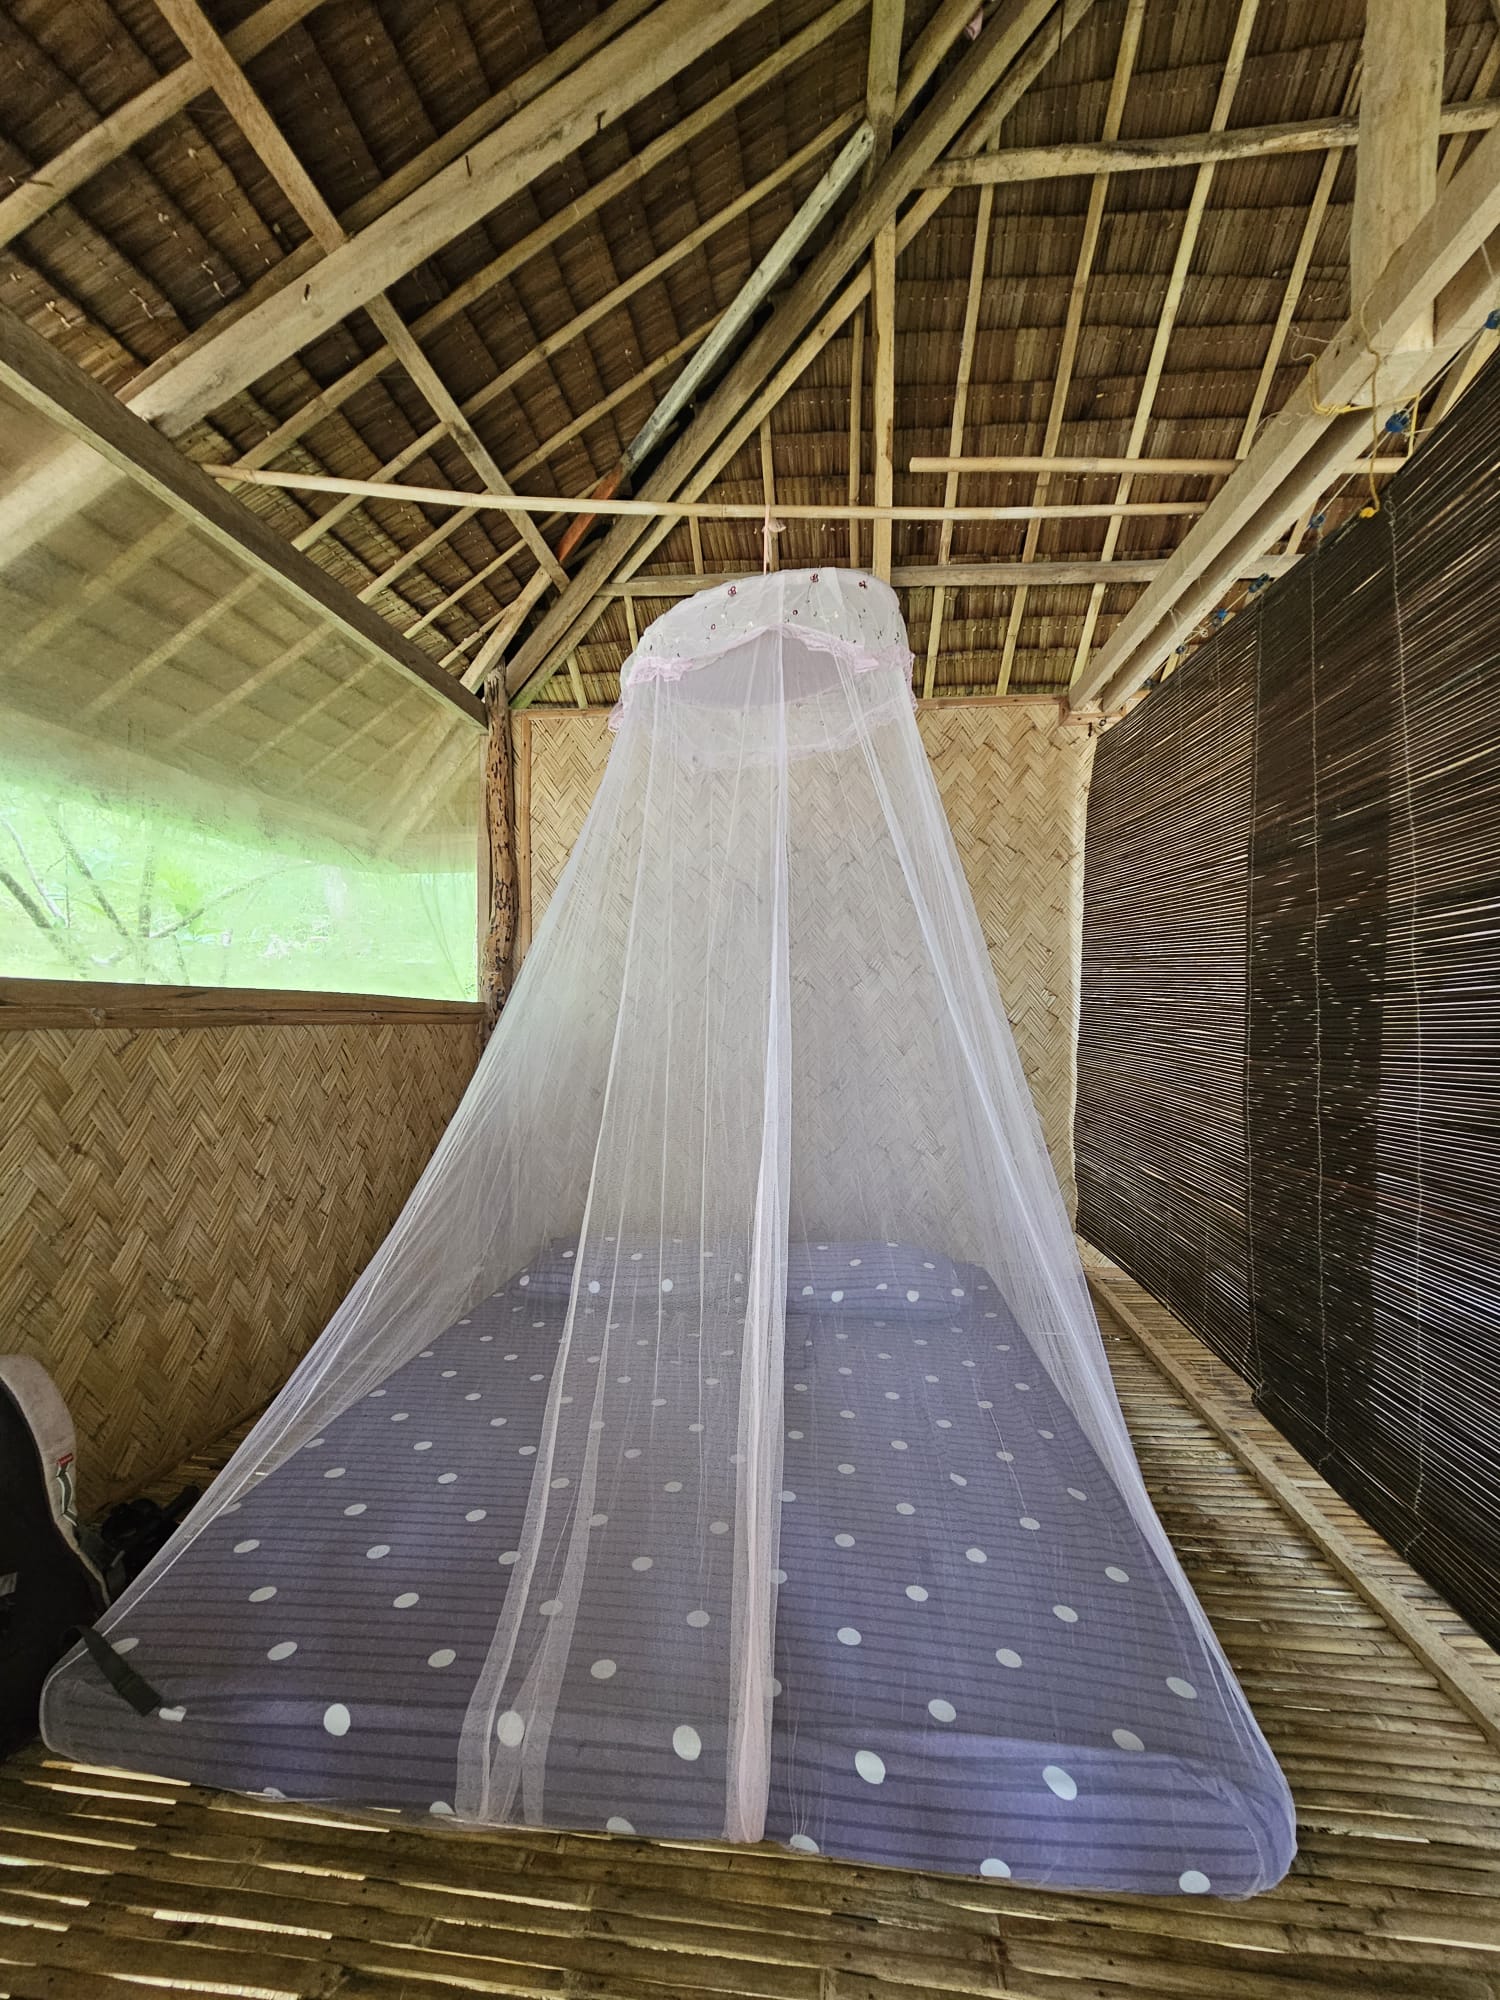 Rede mosquiteira numa cabana nas Filipinas